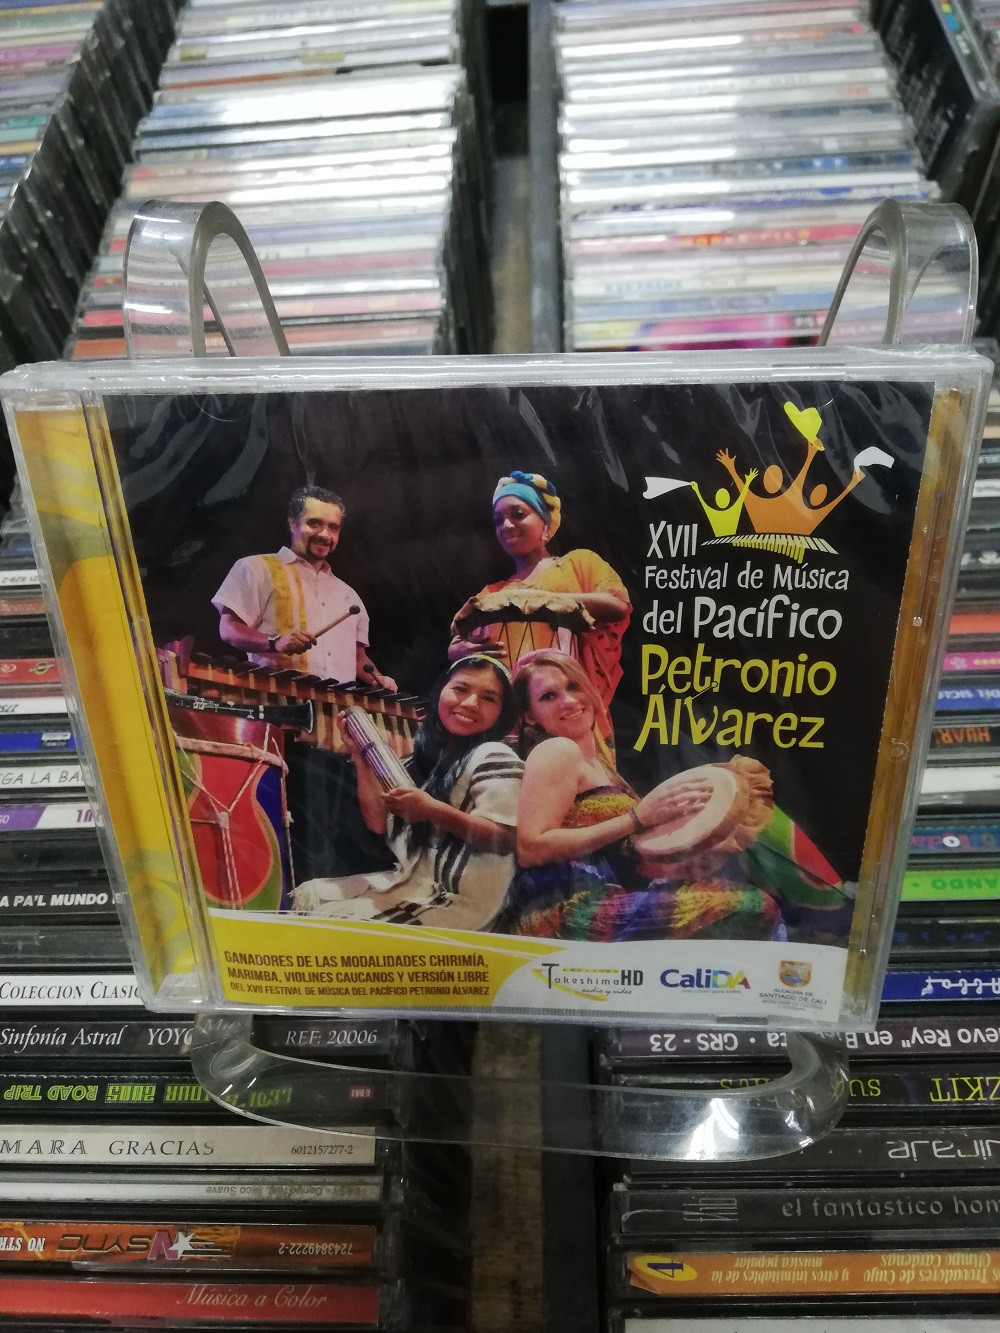 Imagen CD FESTIVAL DE MÚSICA DEL PACÍFICO PETRONIO ALVAREZ # 17 1